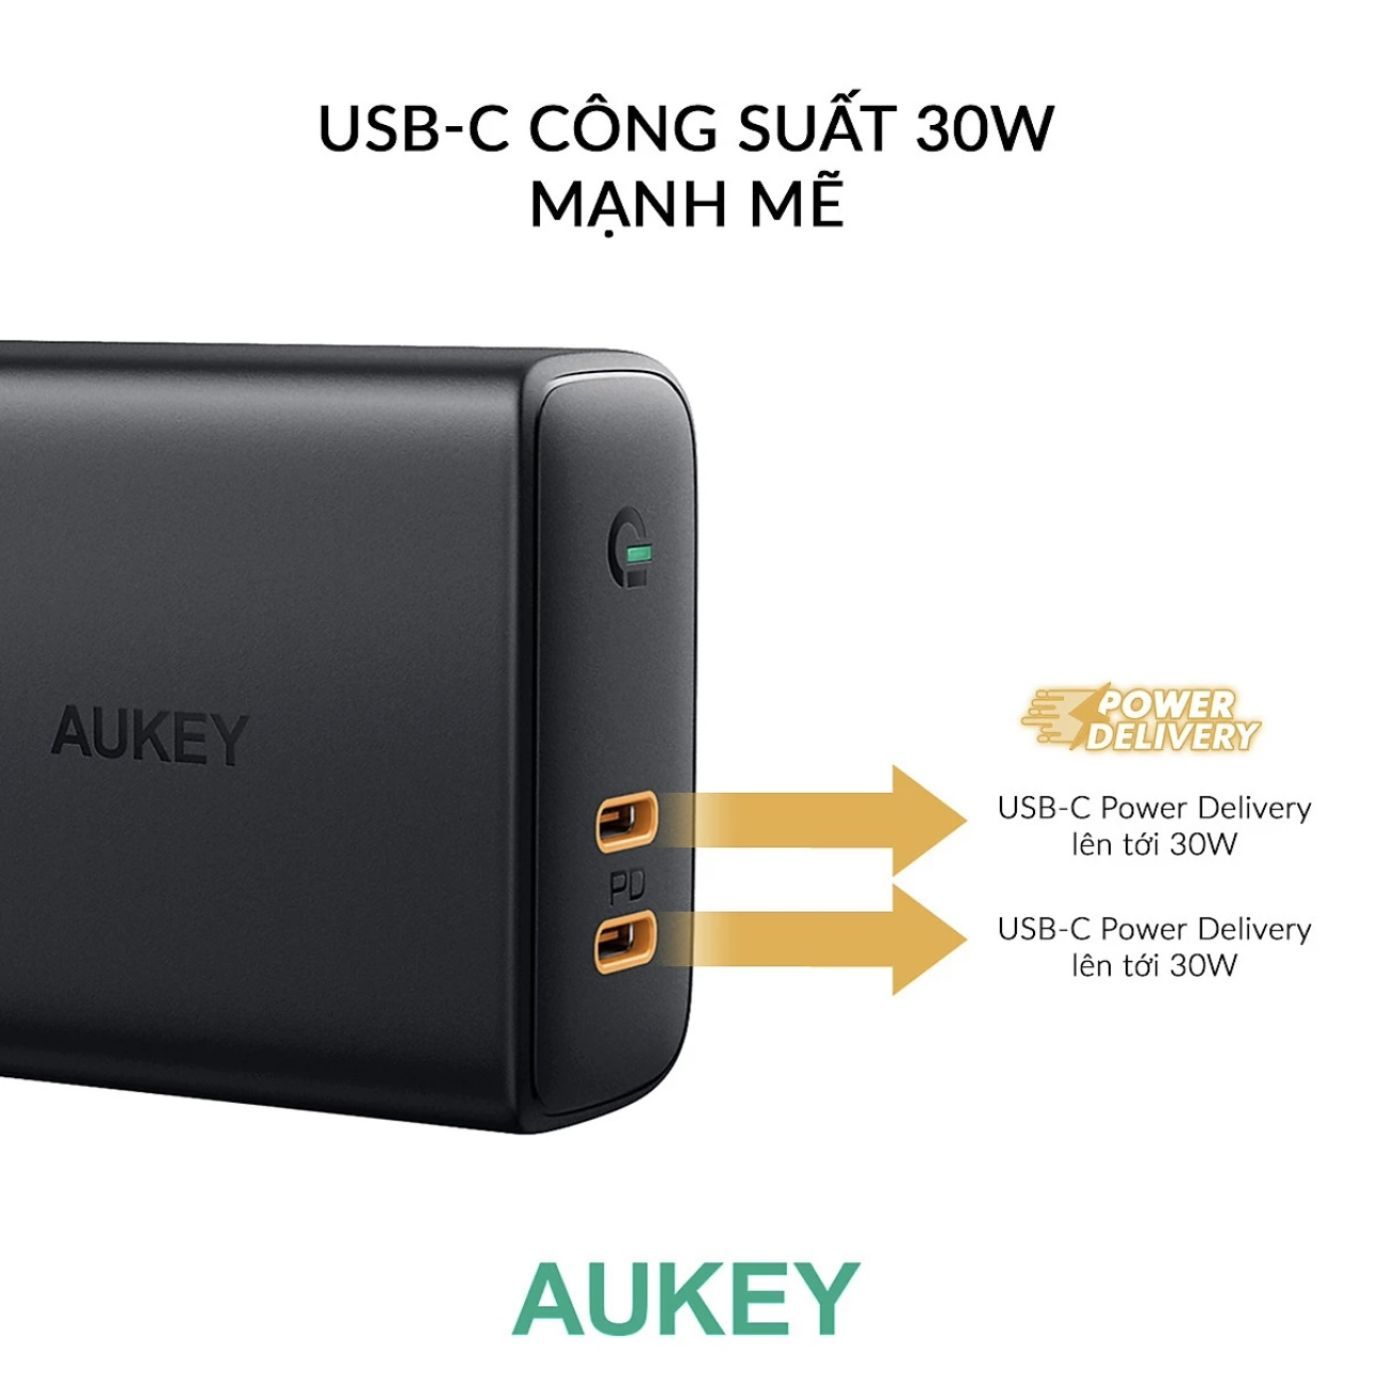 Củ Sạc Nhanh 36W Aukey PA-D2 Chính Hãng, 2 Cổng USB-C Dùng Cho Điện Thoại, Máy Tính Bảng, Laptop